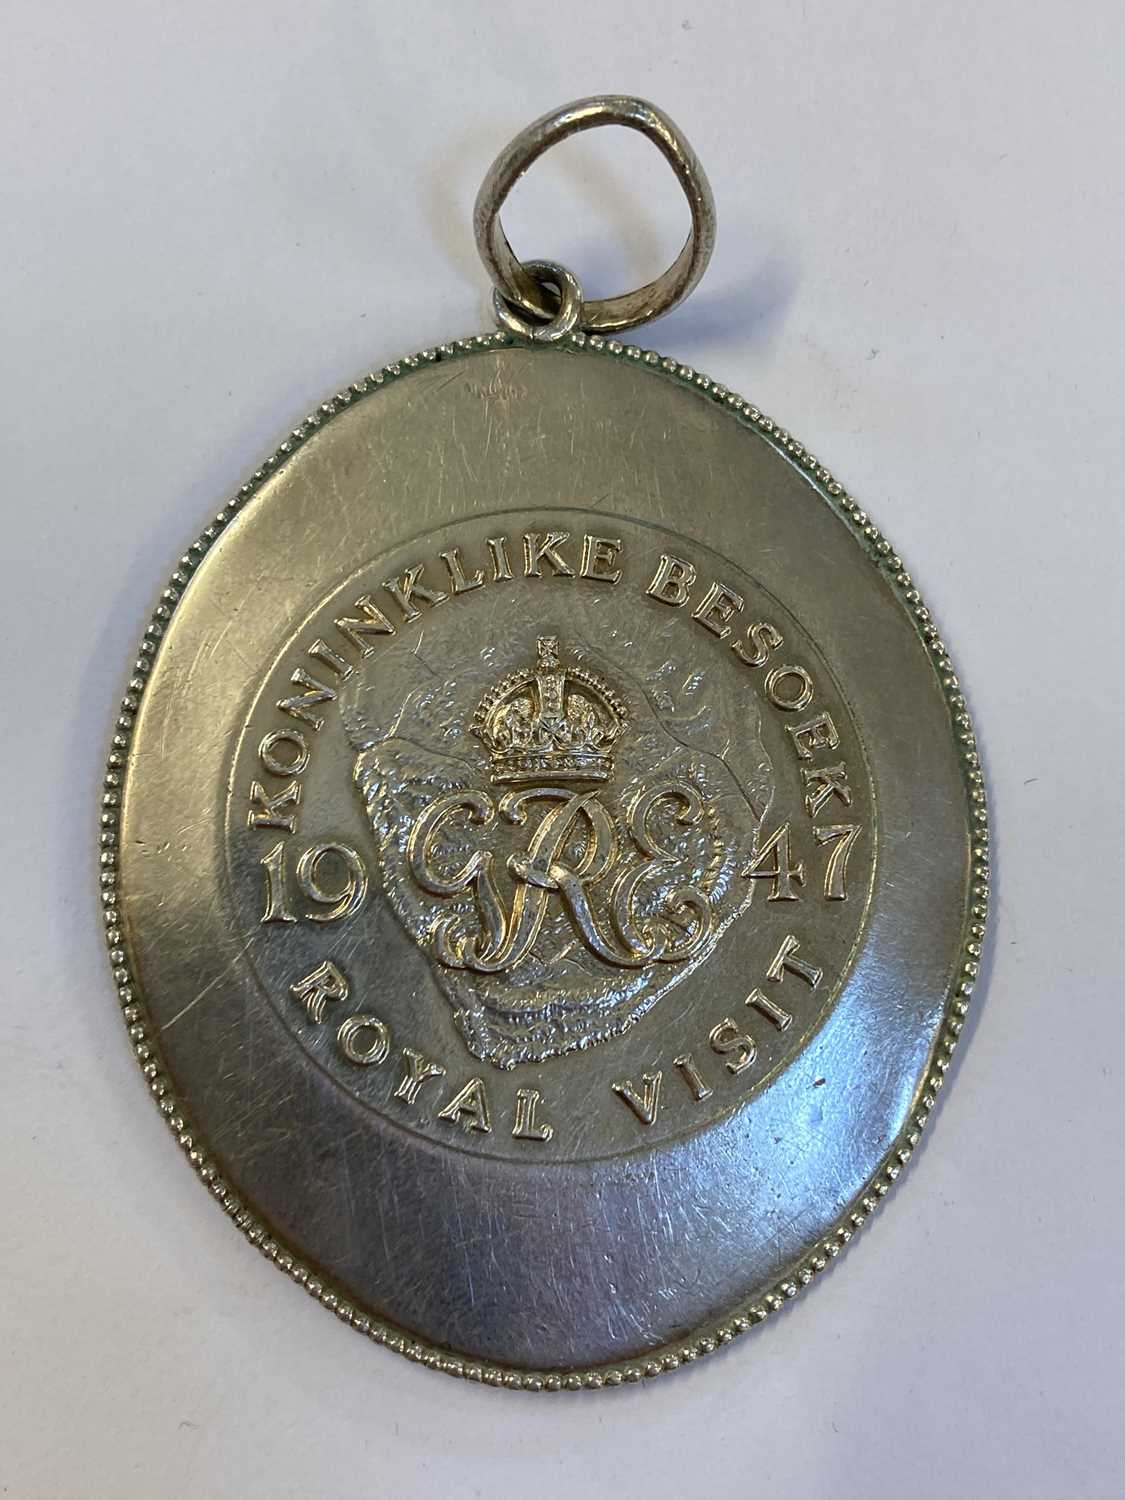 royal visit 1947 medal value